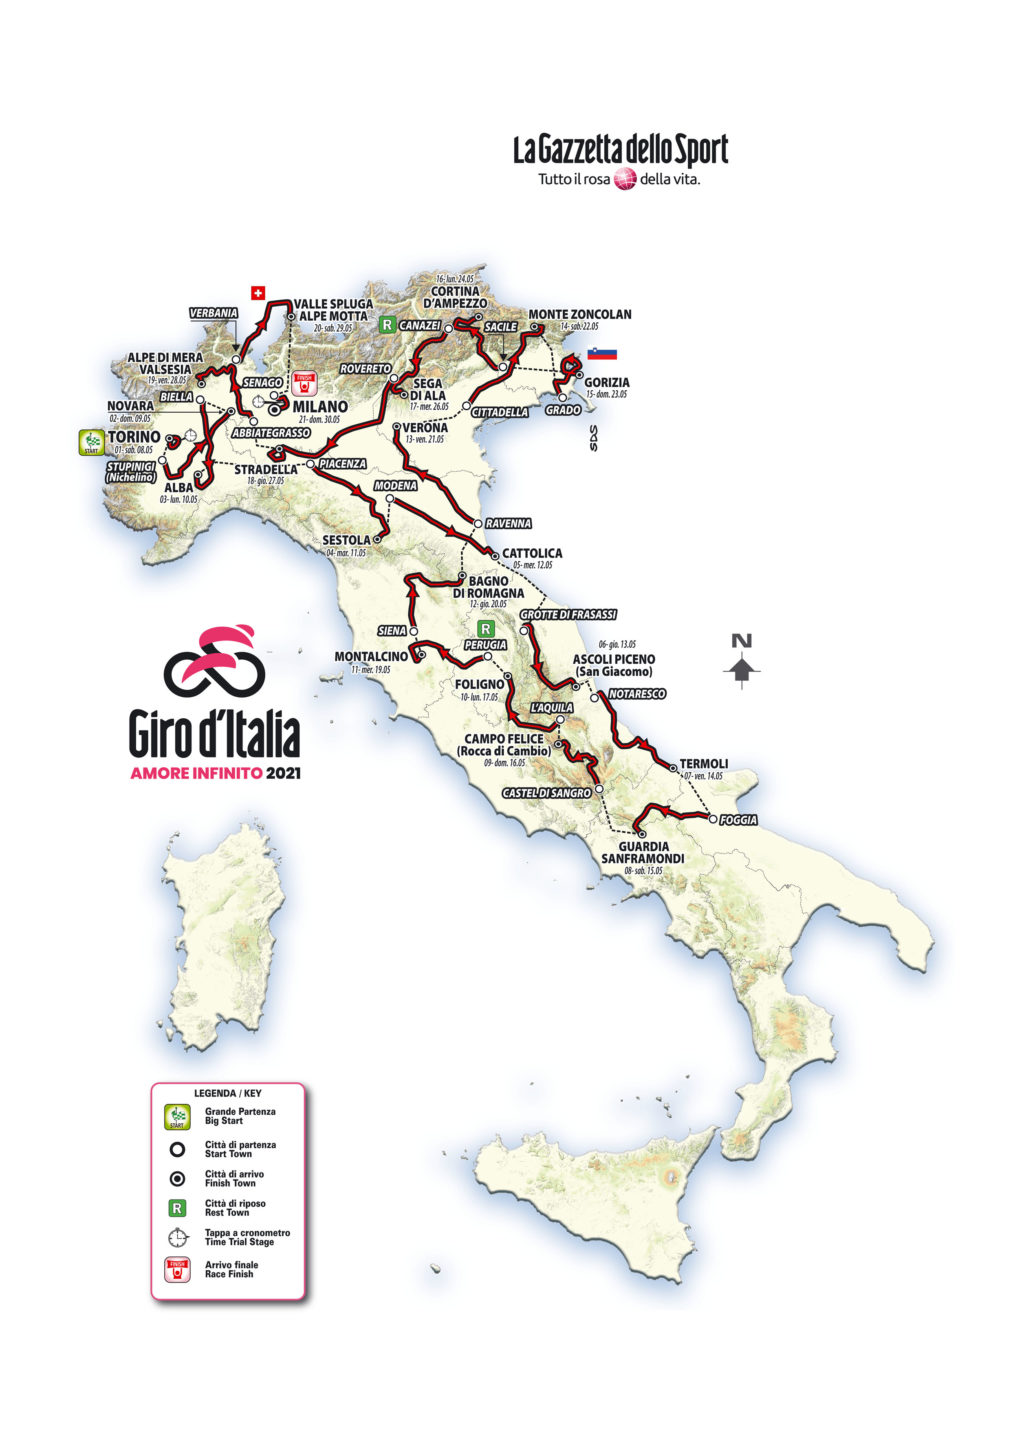 Torna il Giro d’Italia, nel segno di Dante Alighieri